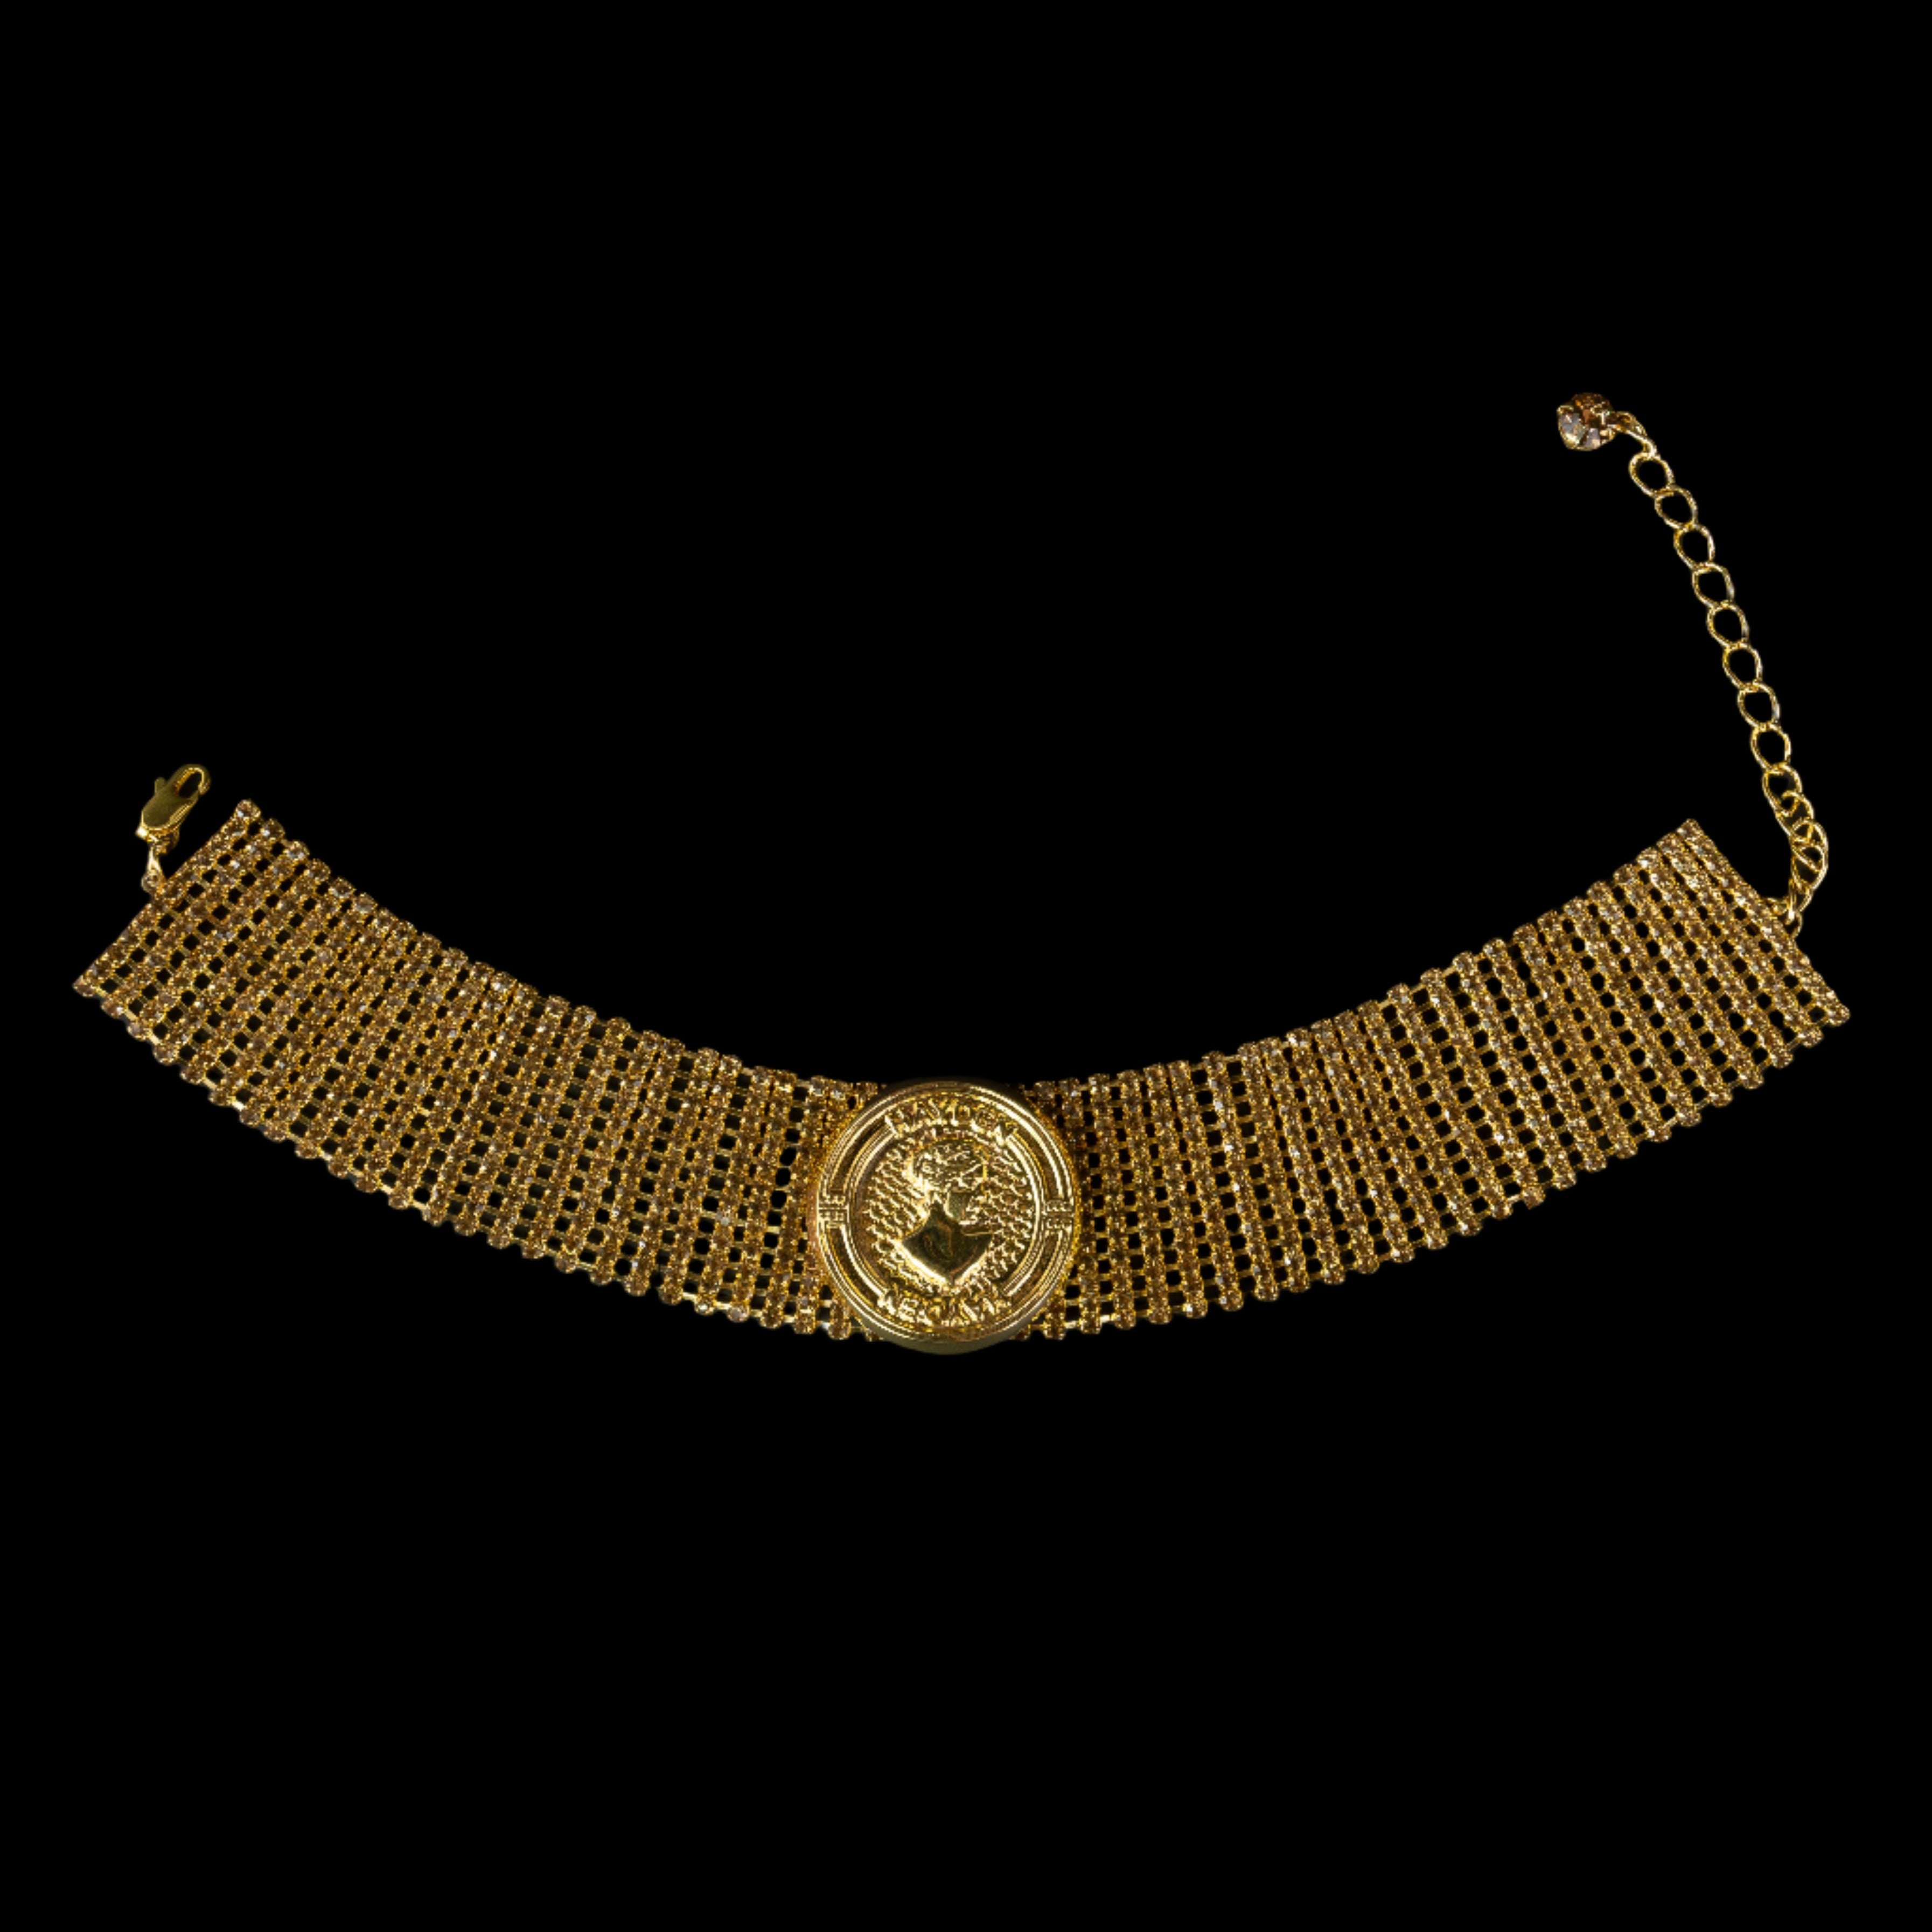 Hera Bra chain in Gold – Hayden